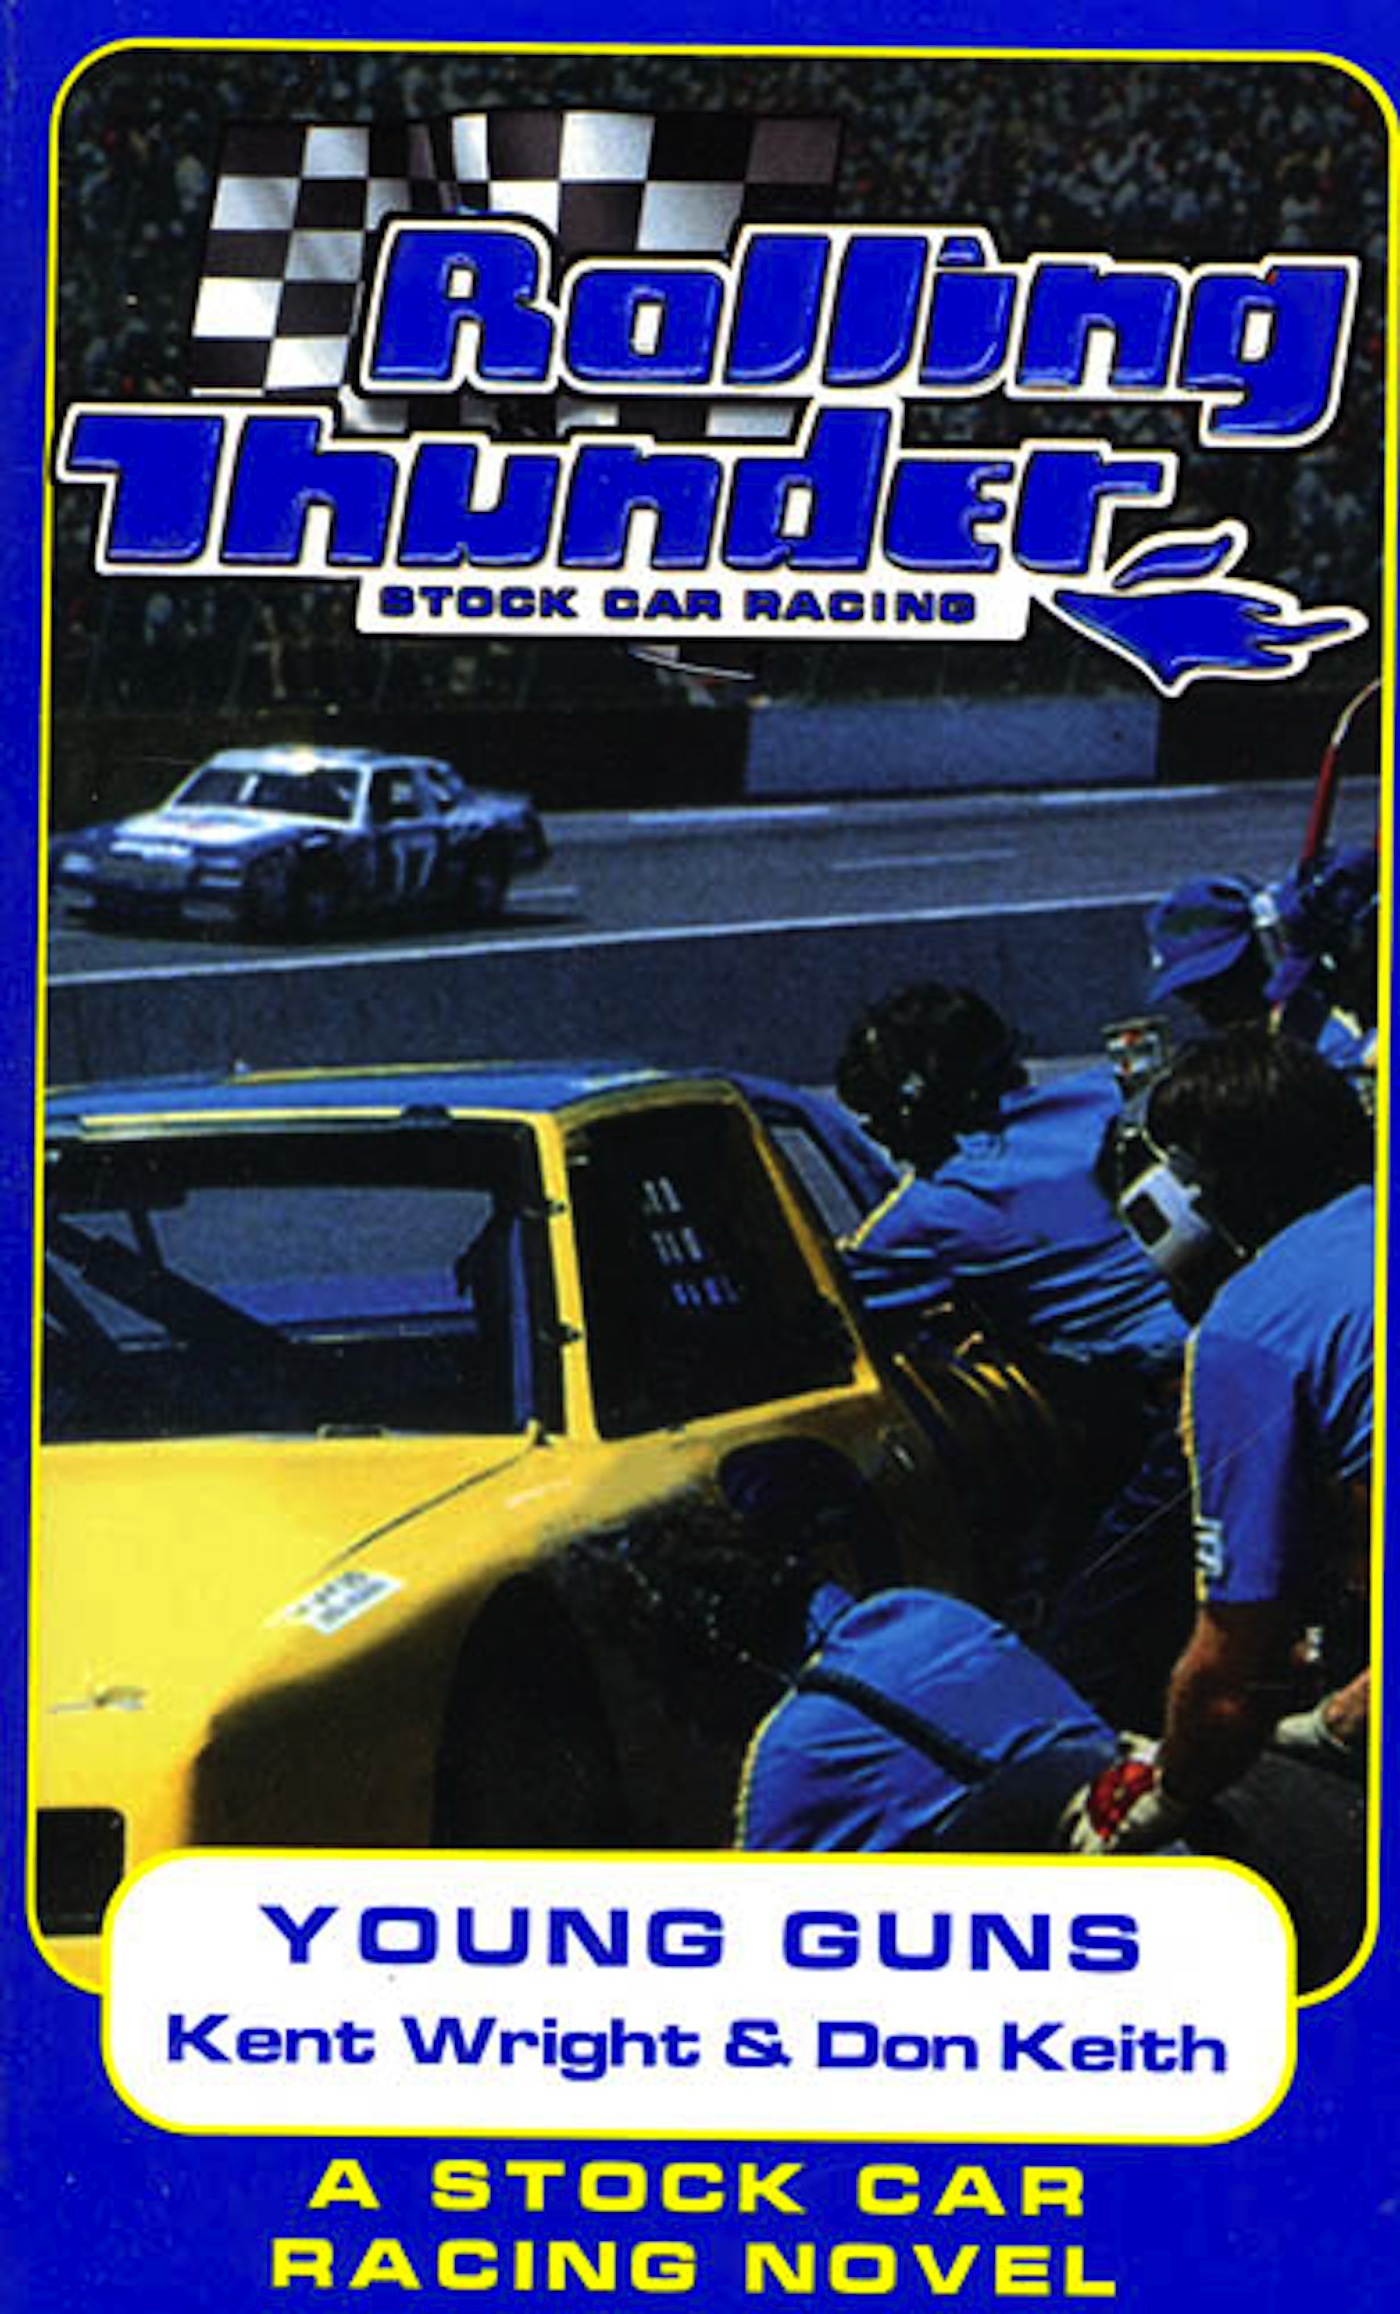 Rolling Thunder Stock Car Racing: Young Guns : A Stock Car Racing Novel by Kent Wright, Don Keith